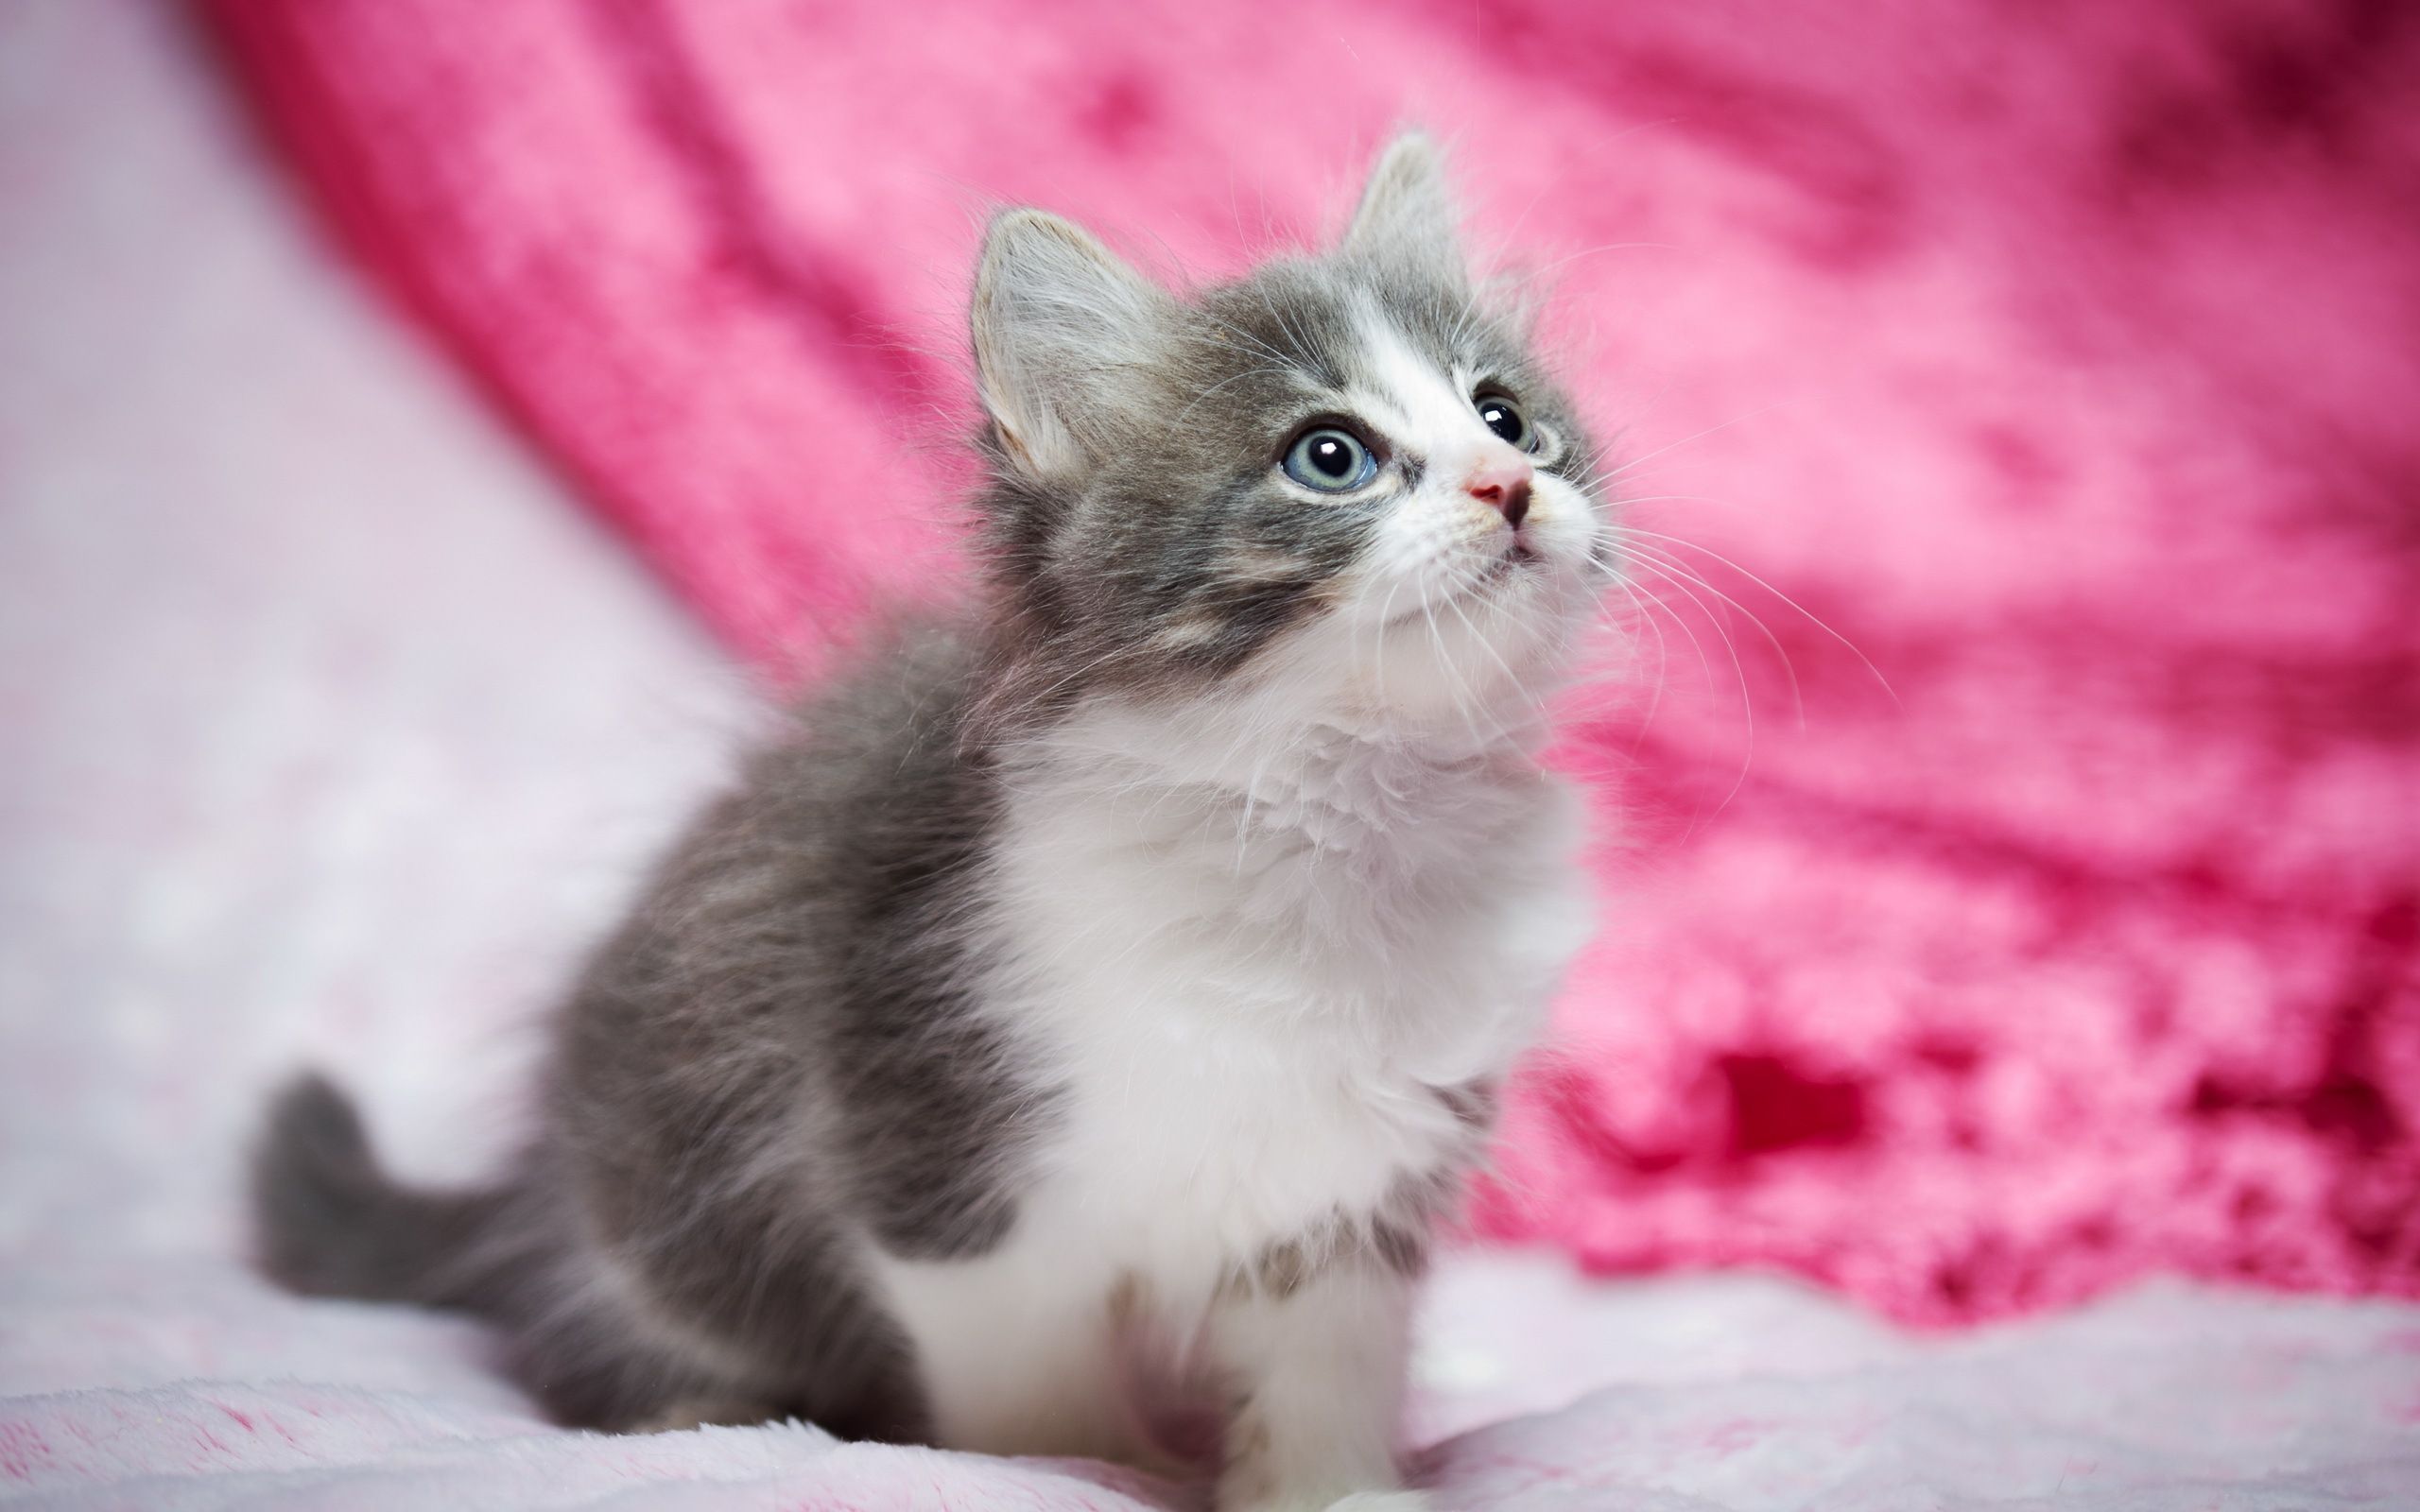 Vibrant Pink Cat Live Wallpaper: High School Mascot Portrait - free download